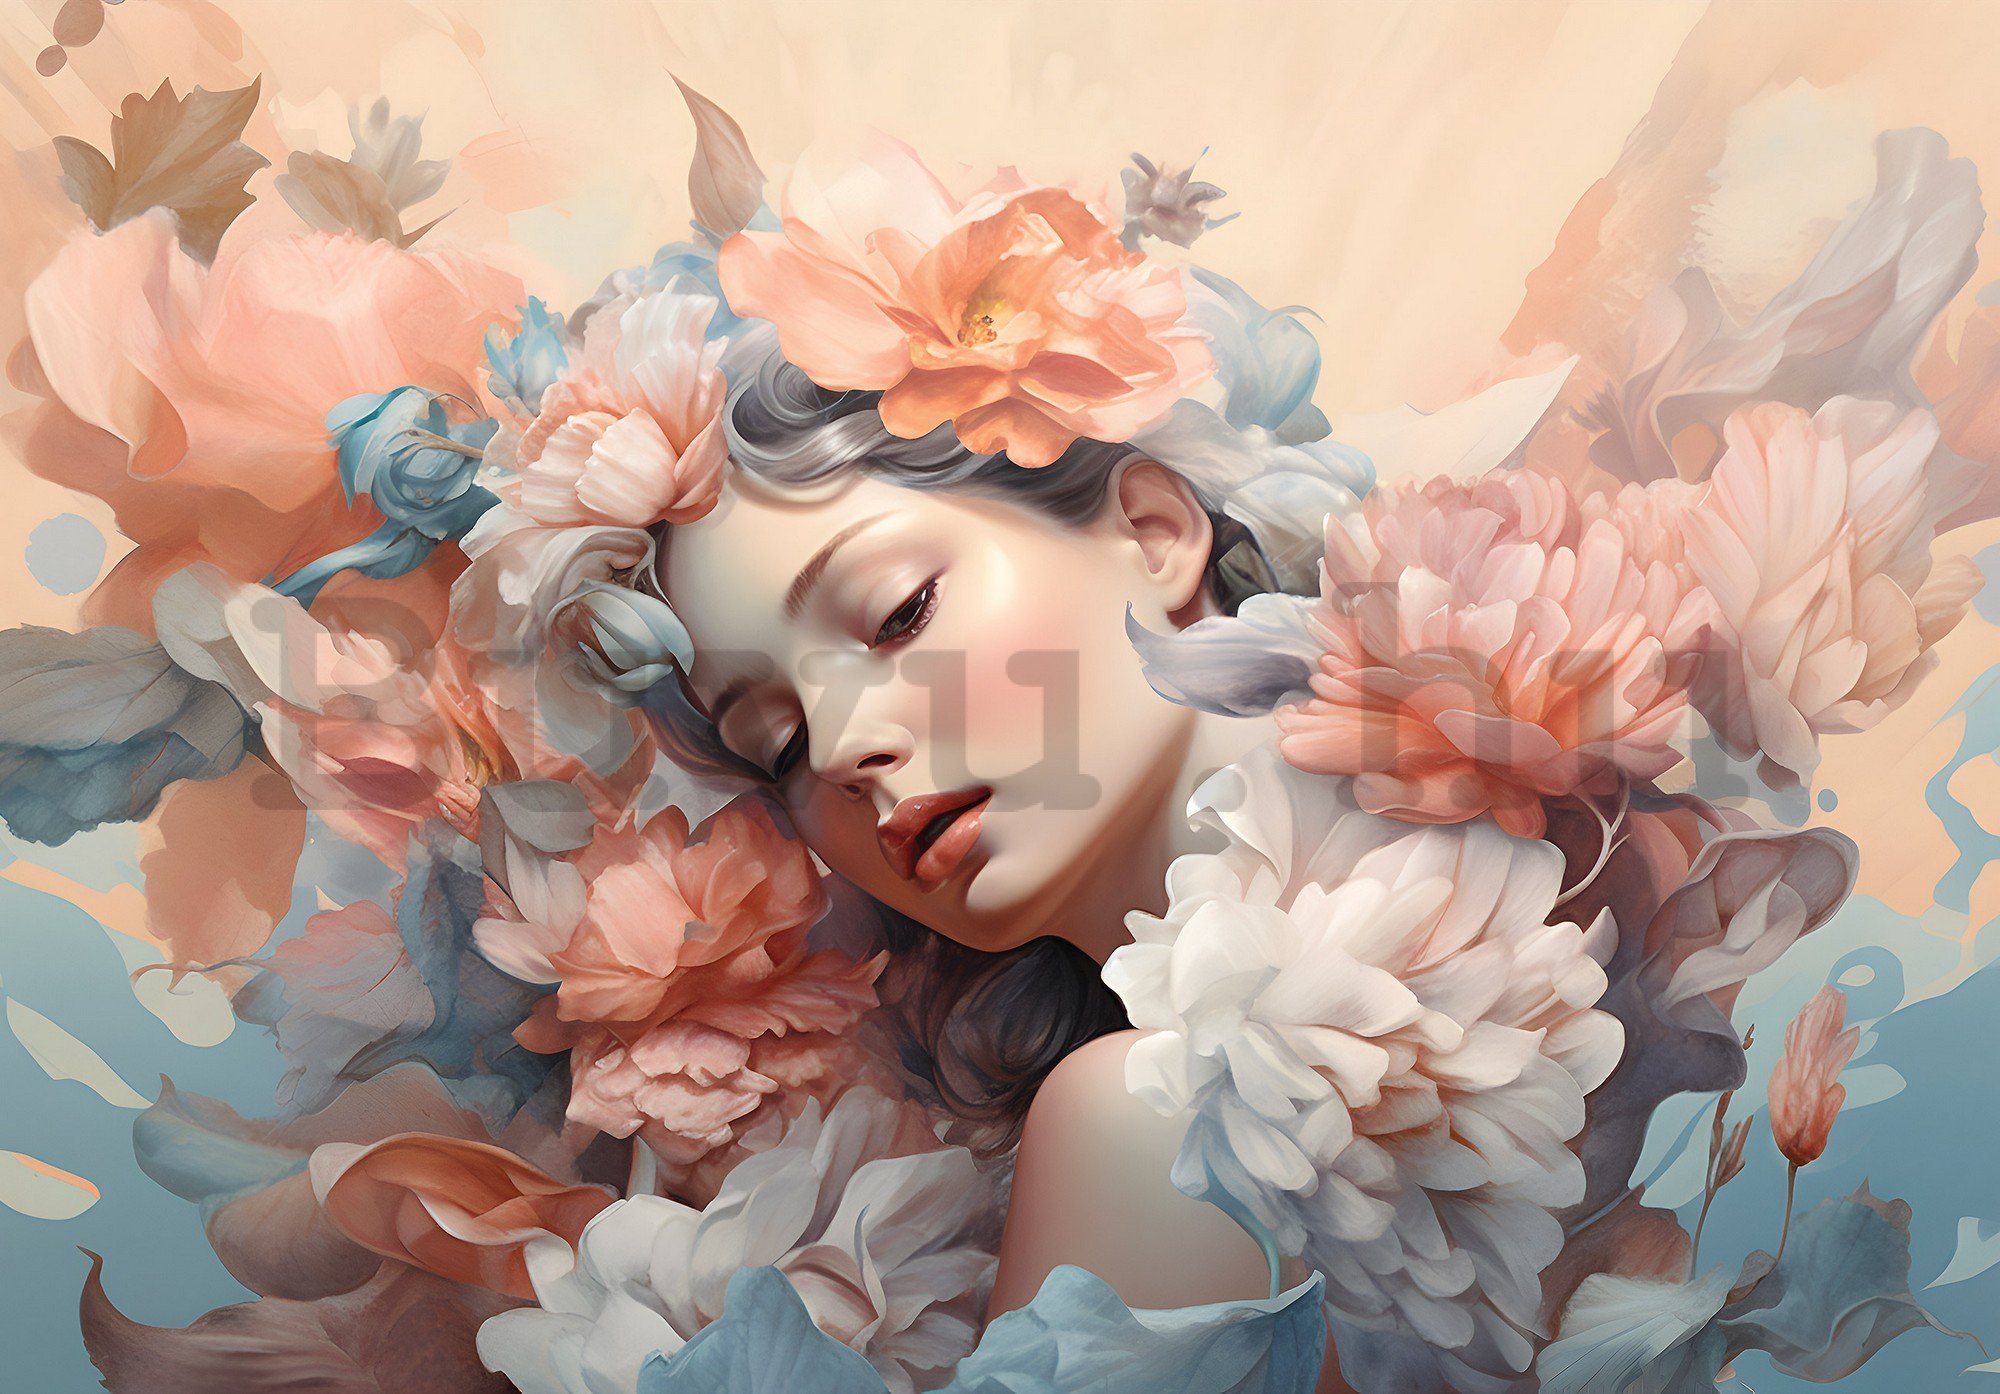 Vlies fotótapéta: Woman flowers pastel elegance (1) - 368x254 cm